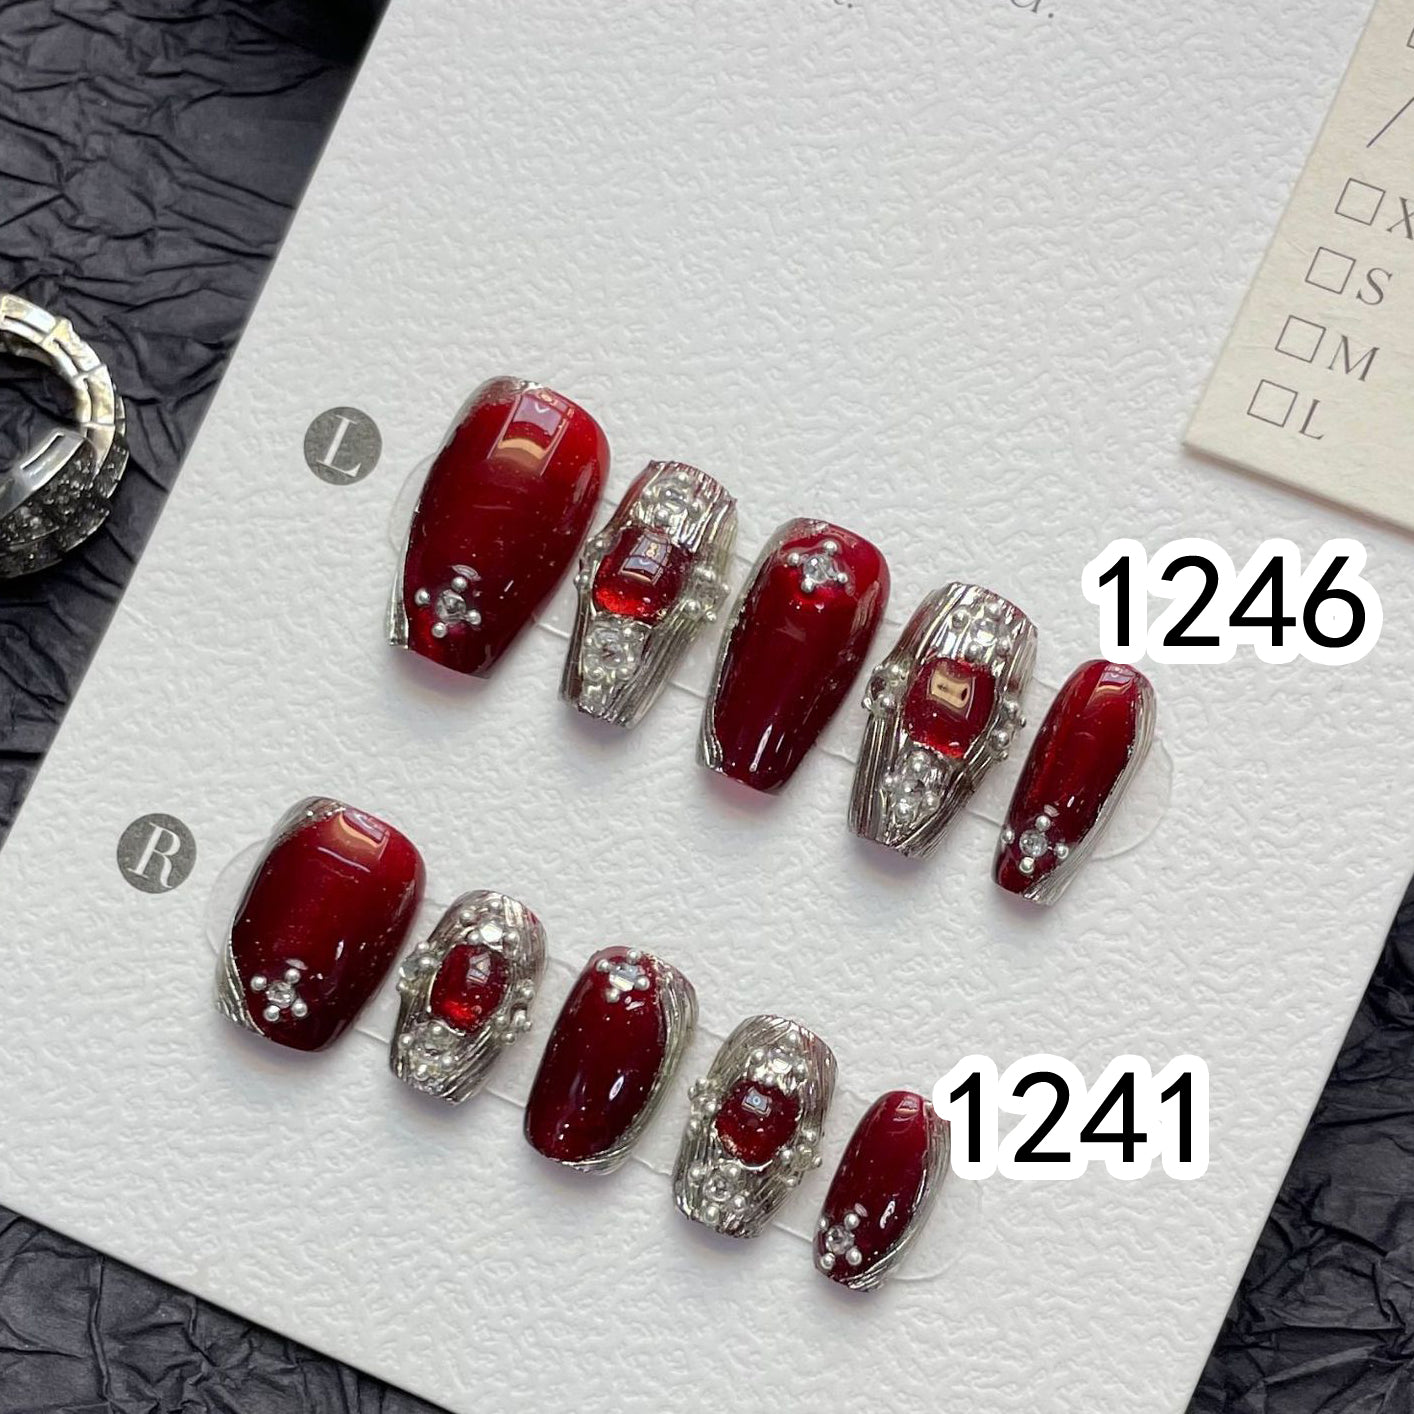 1241/1246 Rode BUCCELLATI stijl pers op nagels 100% handgemaakte kunstnagels rode strook